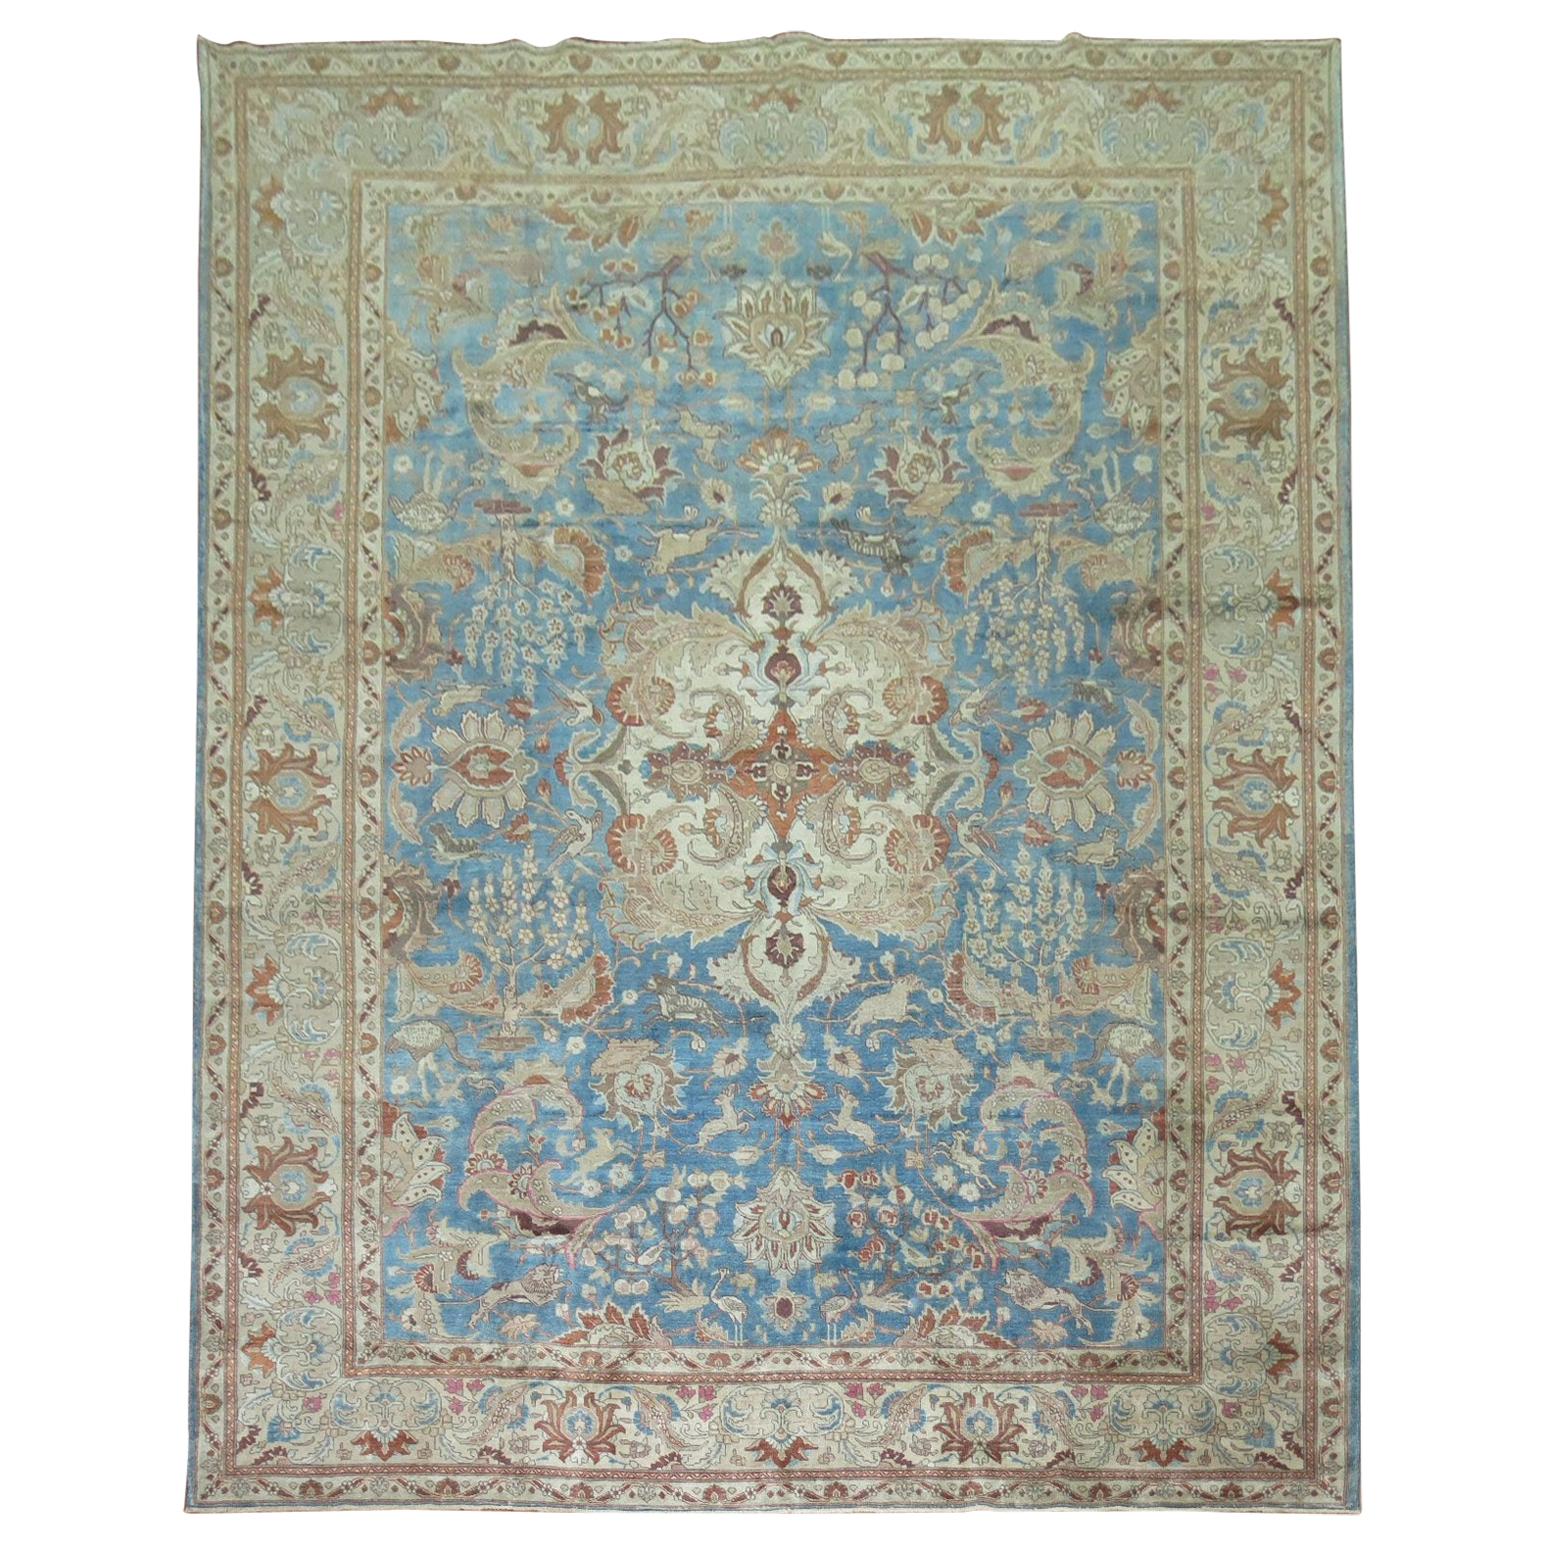 Blauer antiker persischer Täbris-Teppich in Zimmergröße mit Tiermotiven